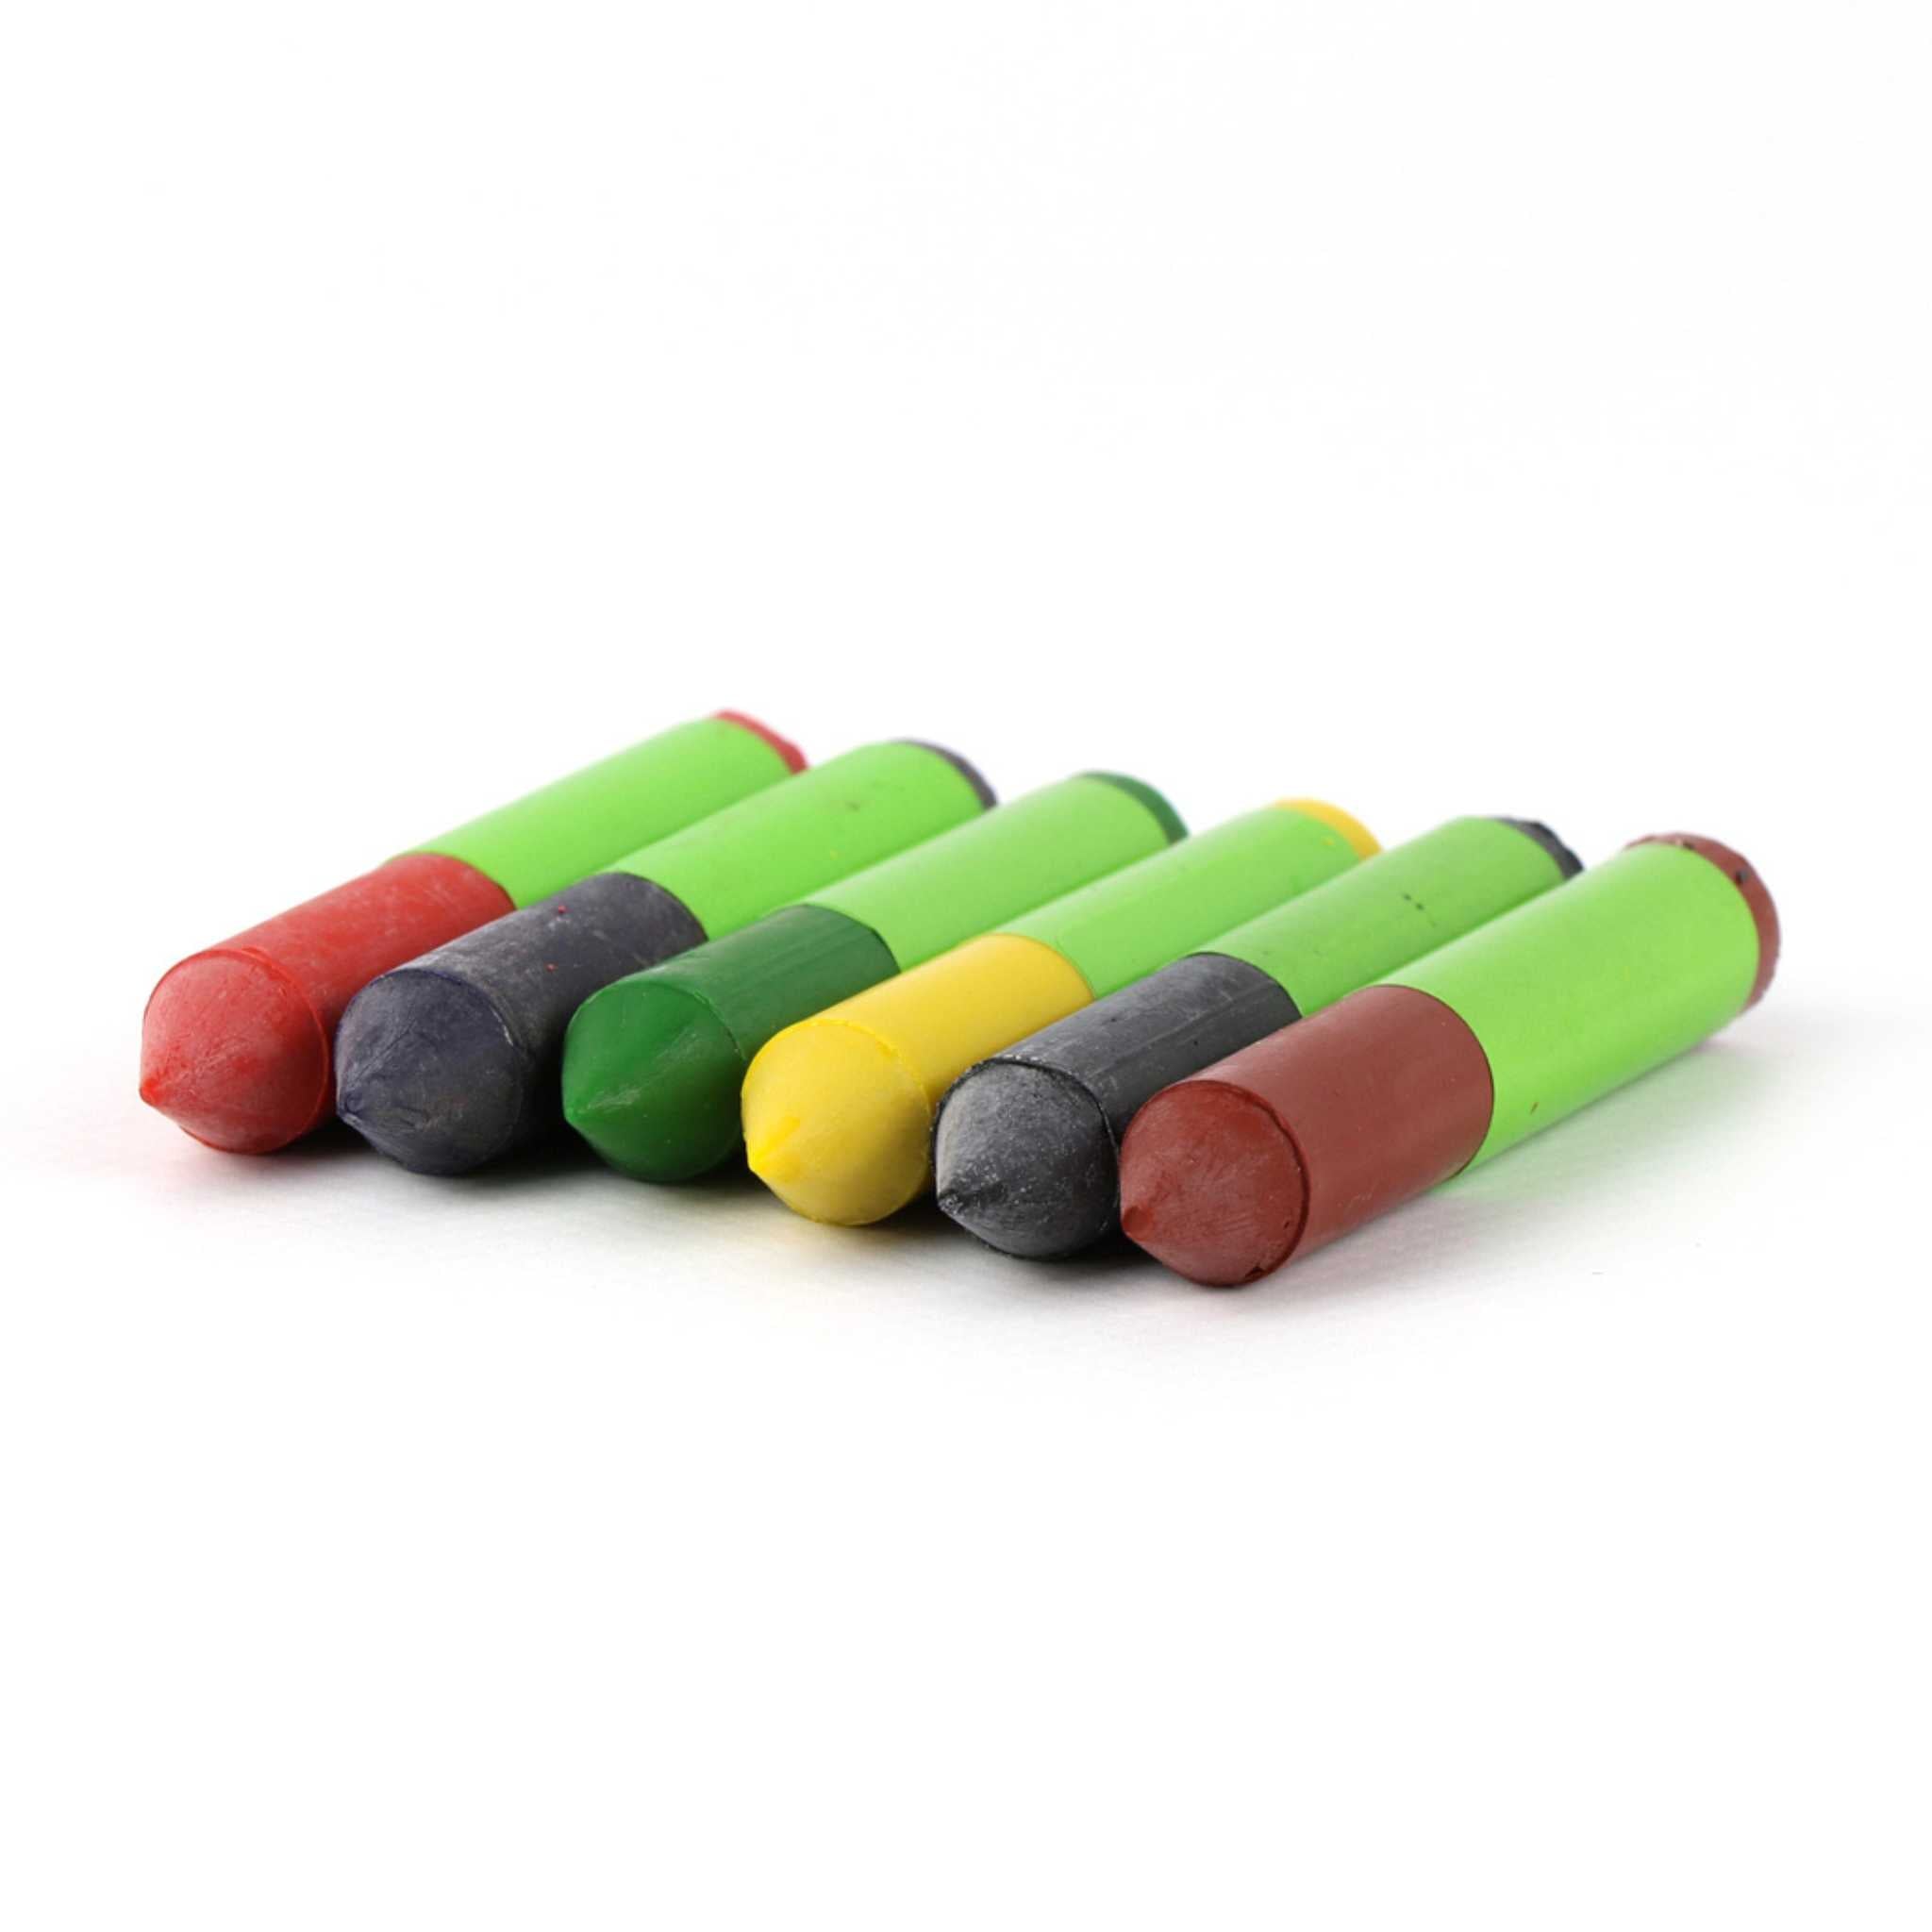 oKoNORM Textile Wax Crayons - 6 Pieces - Crayons